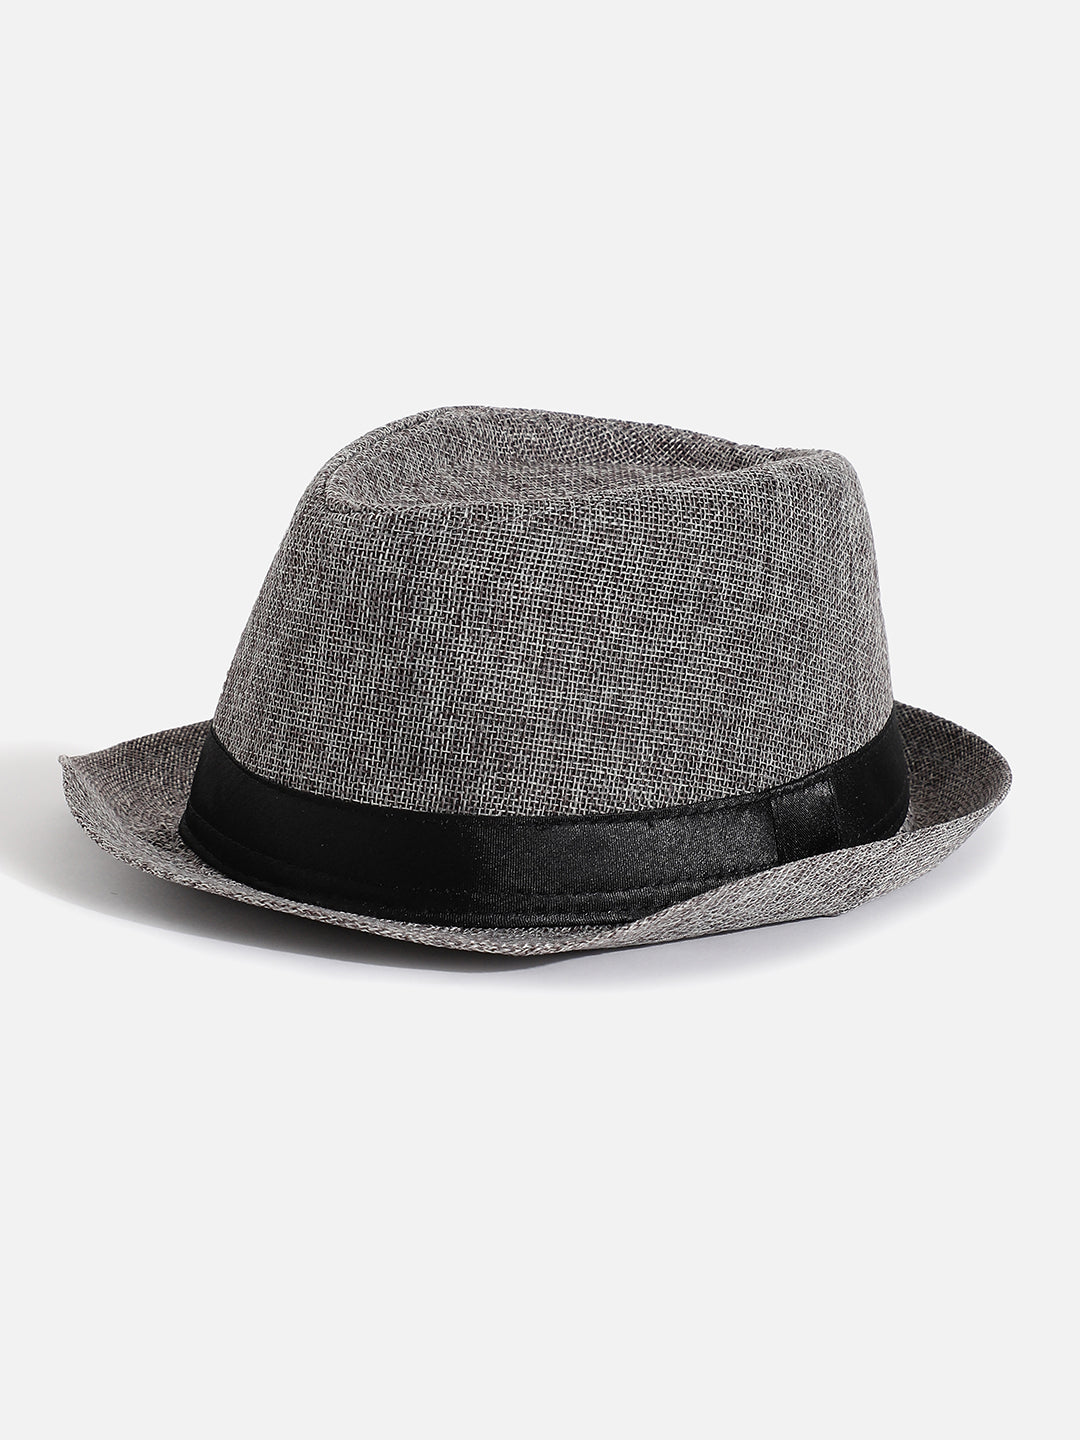 Black Textured Fedora Hat